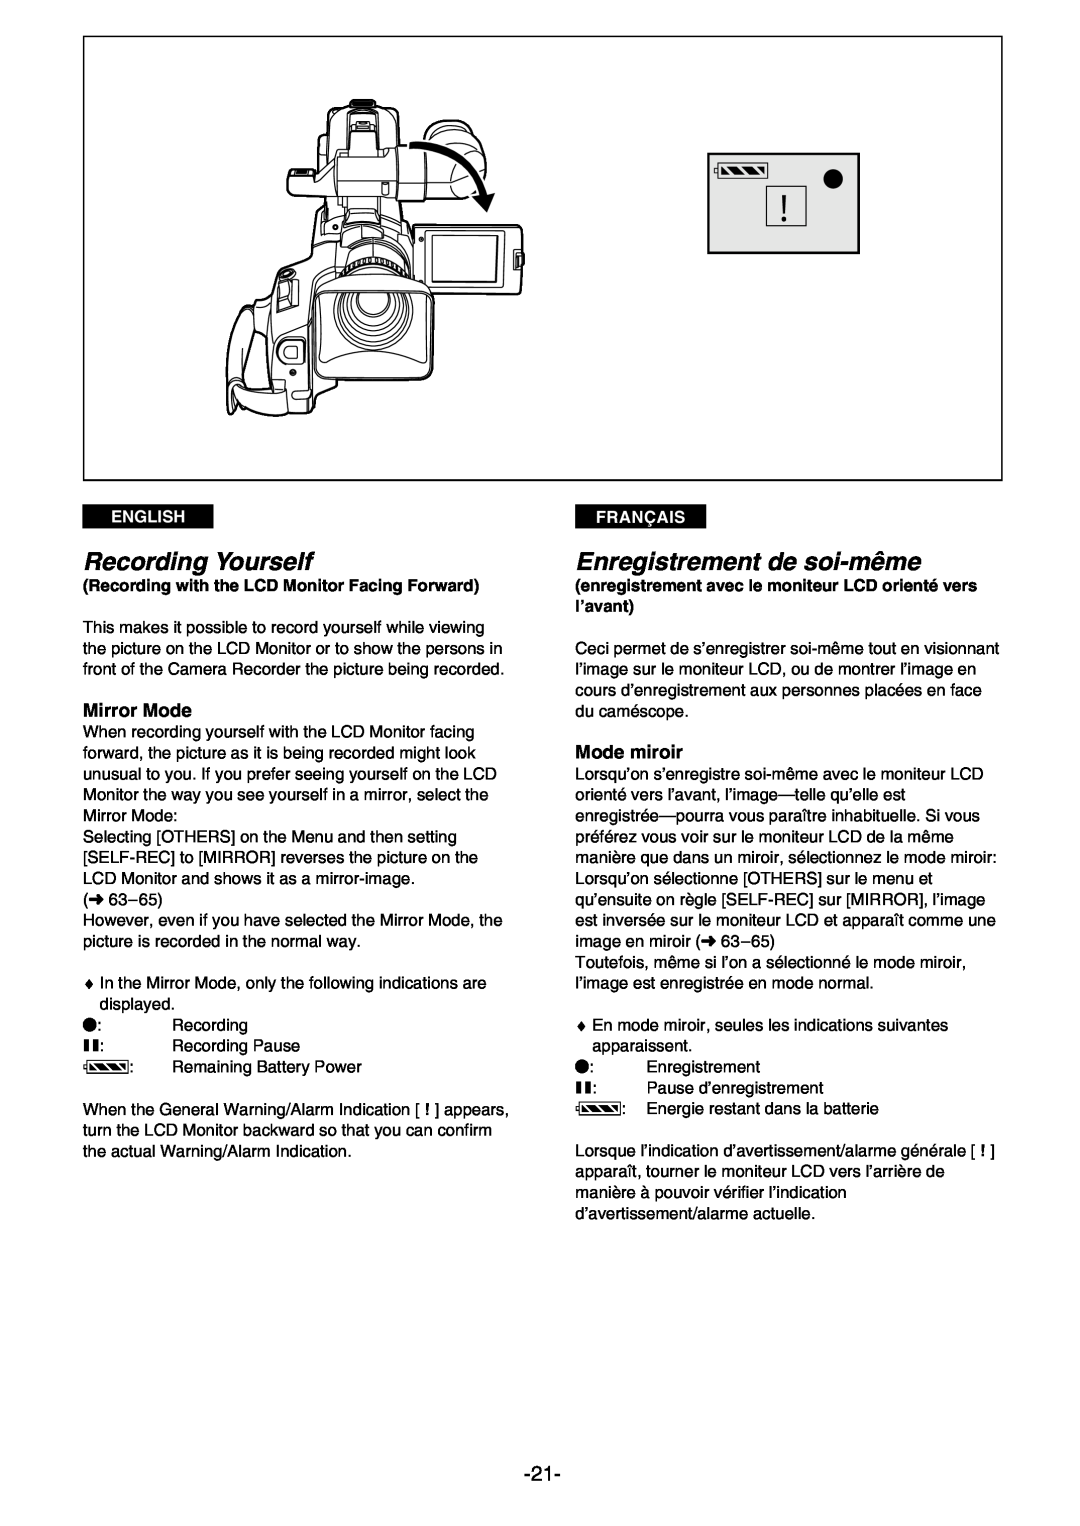 Panasonic AG- DVC 15P manual Recording Yourself, Enregistrement de soi-même, Mirror Mode, Mode miroir, English, Français 